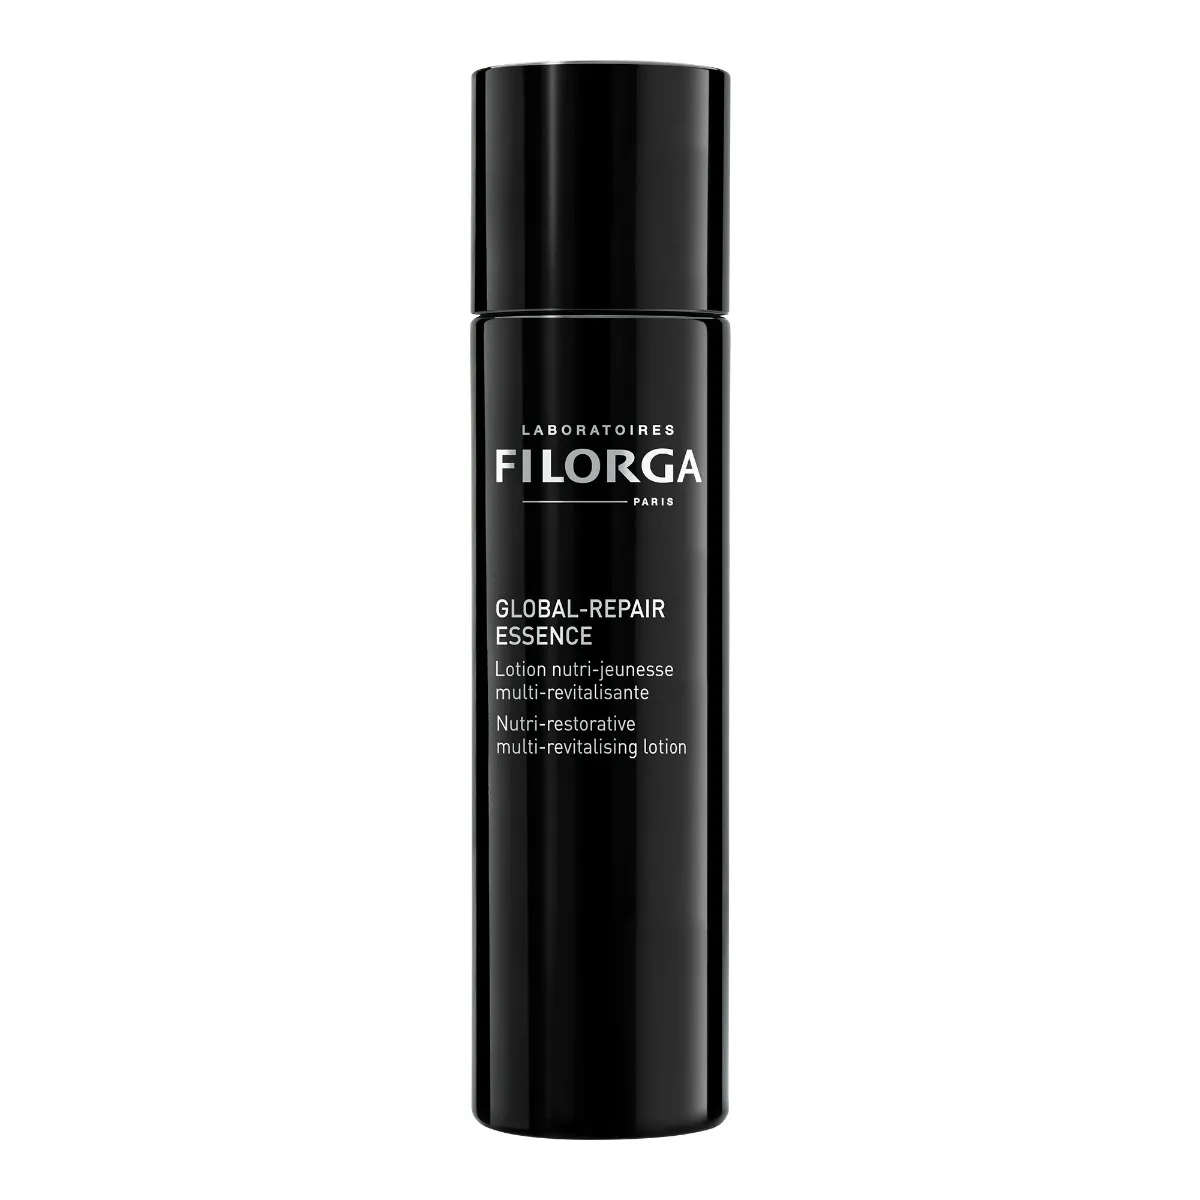 Filorga Global-Repair Essence 150 ml